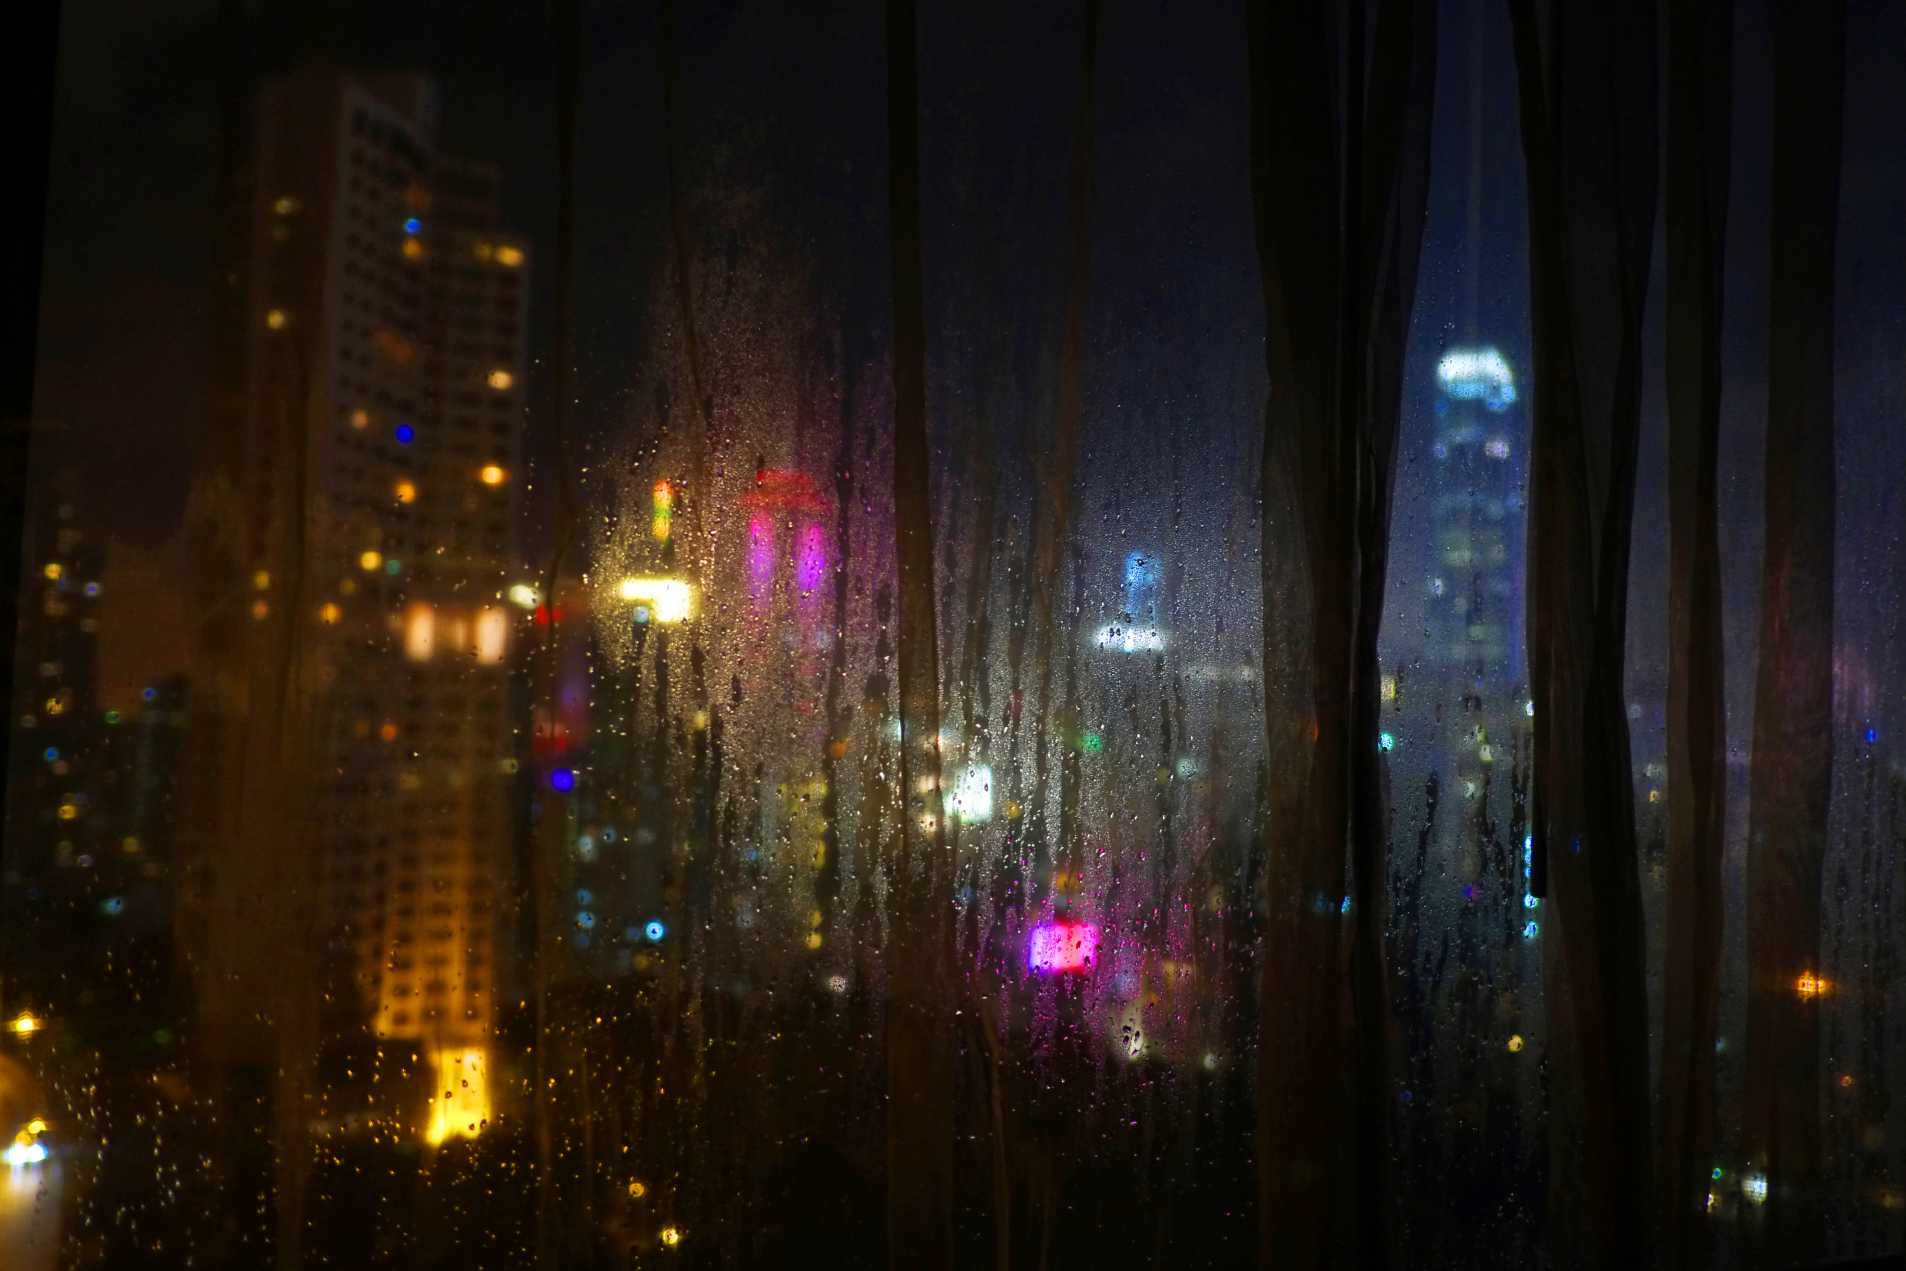  "Hotel Room" Hong Kong. 2014 